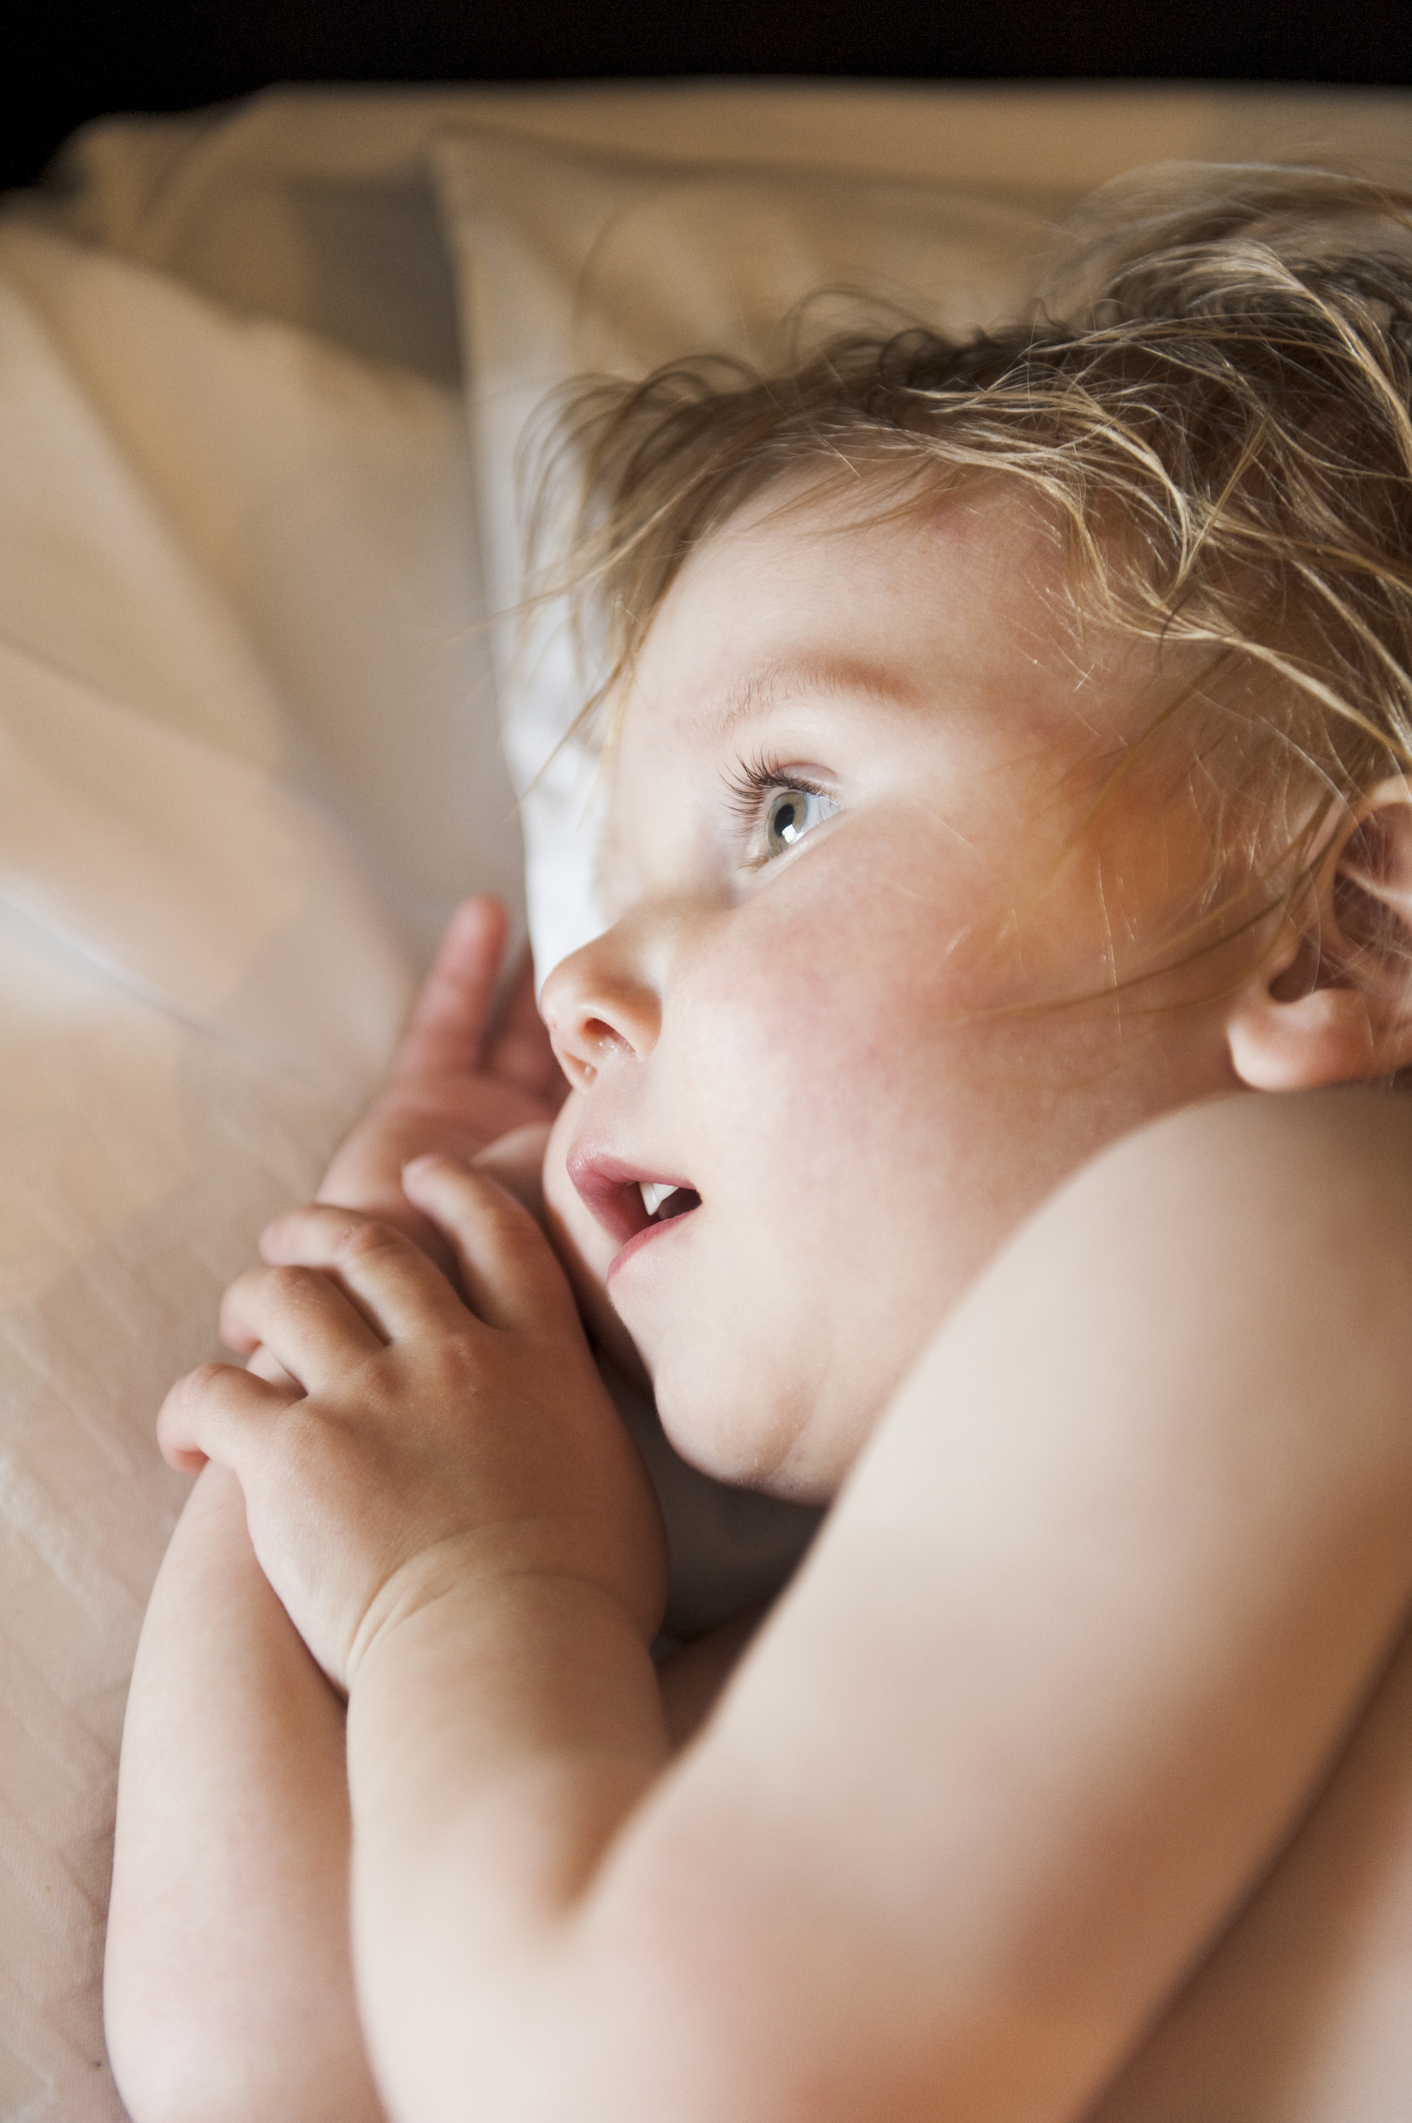 Ребенок потеет во сне, стоит ли переживать? | Мамоведия - о здоровье и развитии ребенка